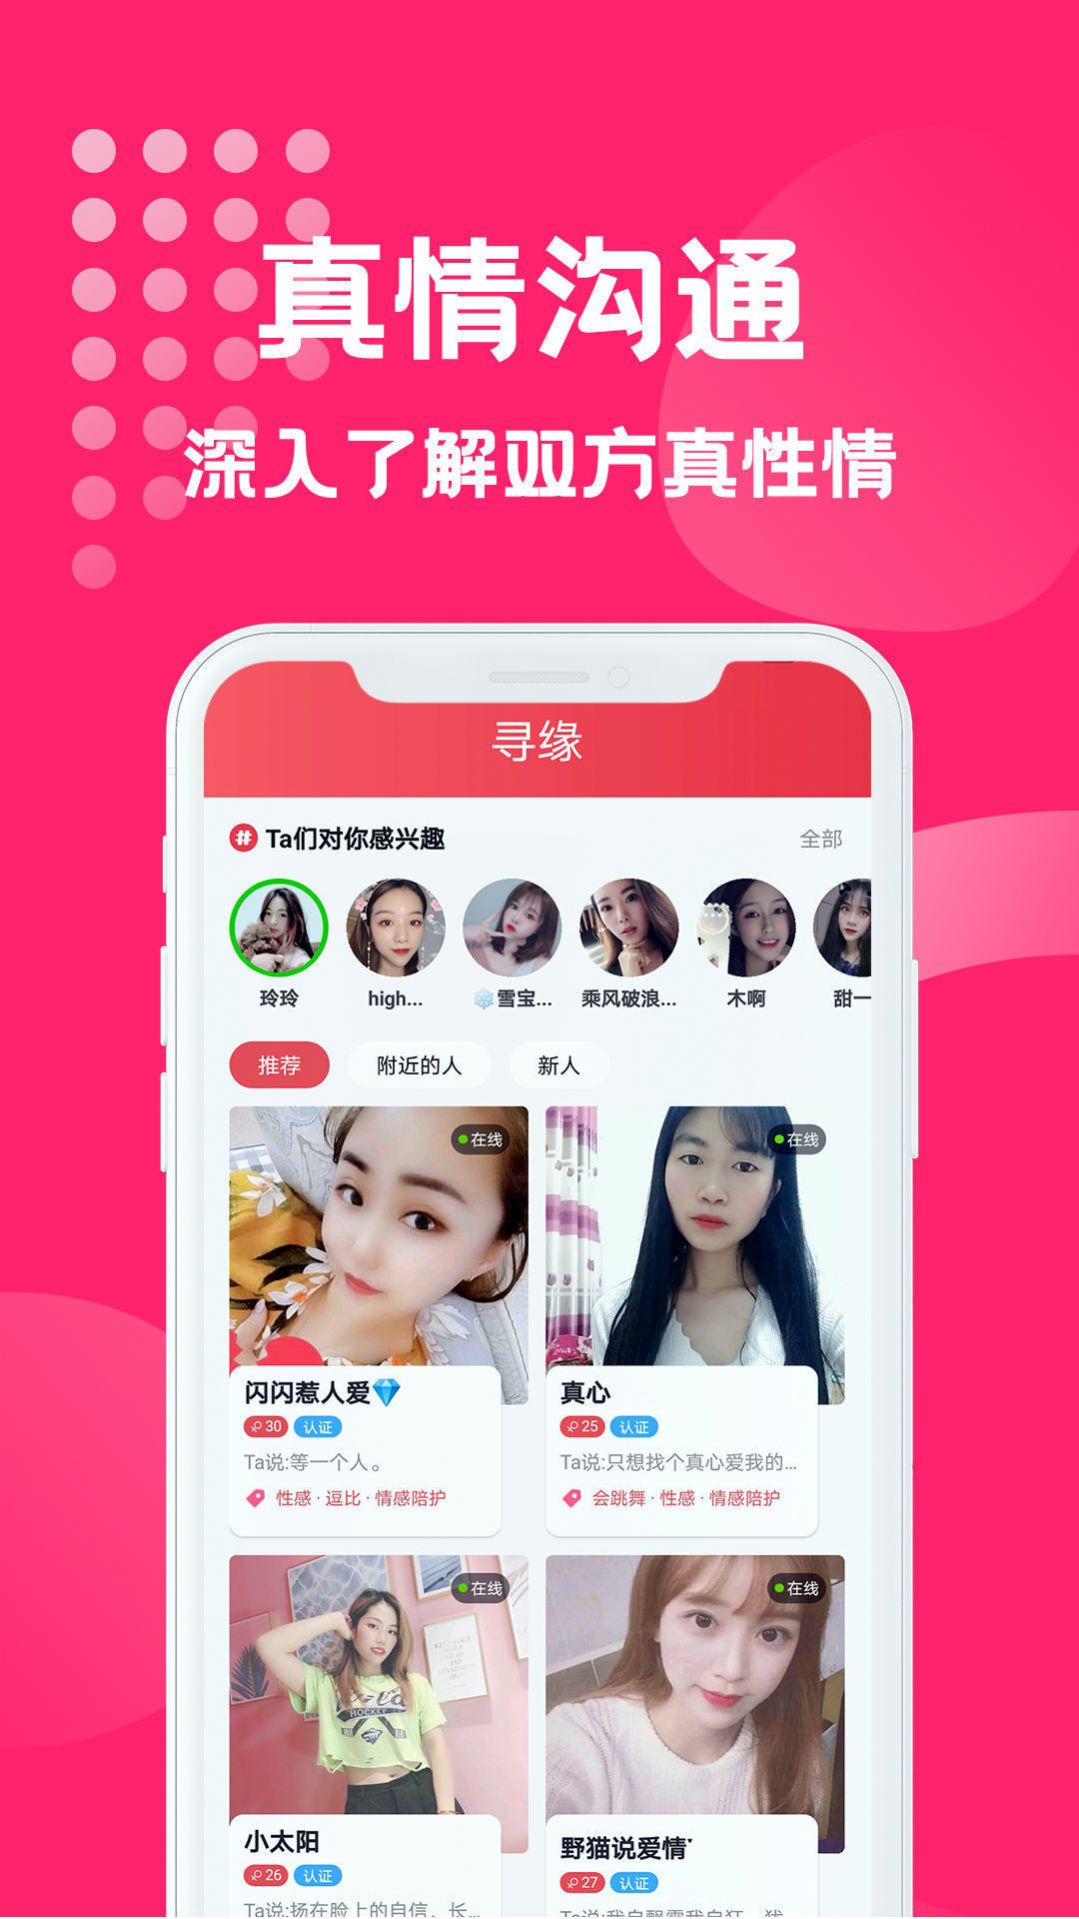 海南映乐寻缘交友平台app下载图片1